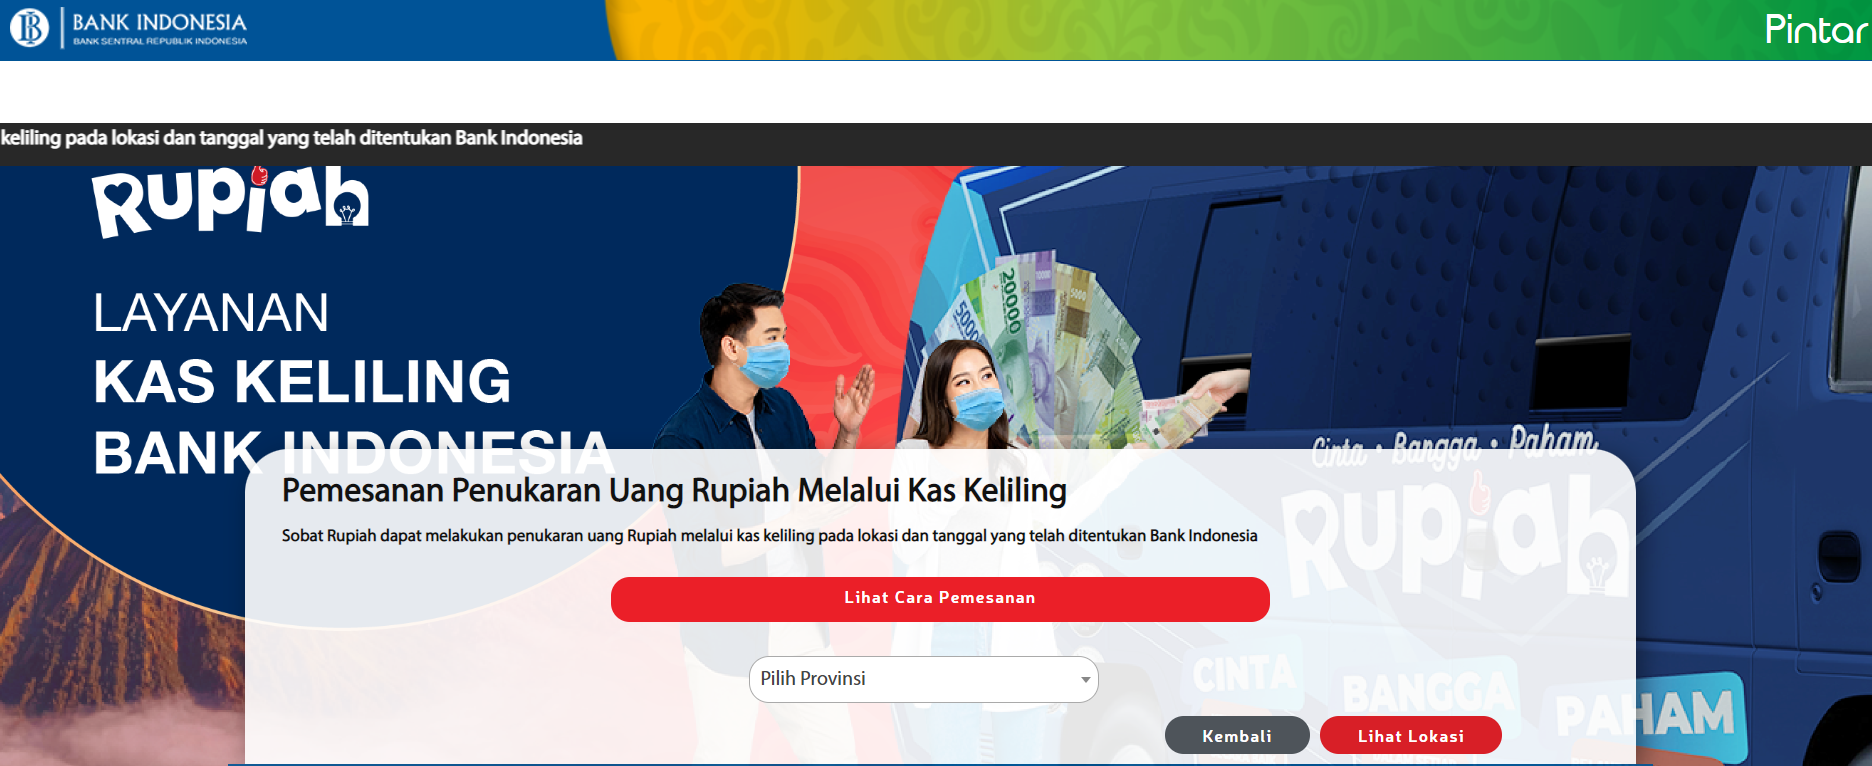 Cara Tukar Uang ke Bank Indonesia Secara Online